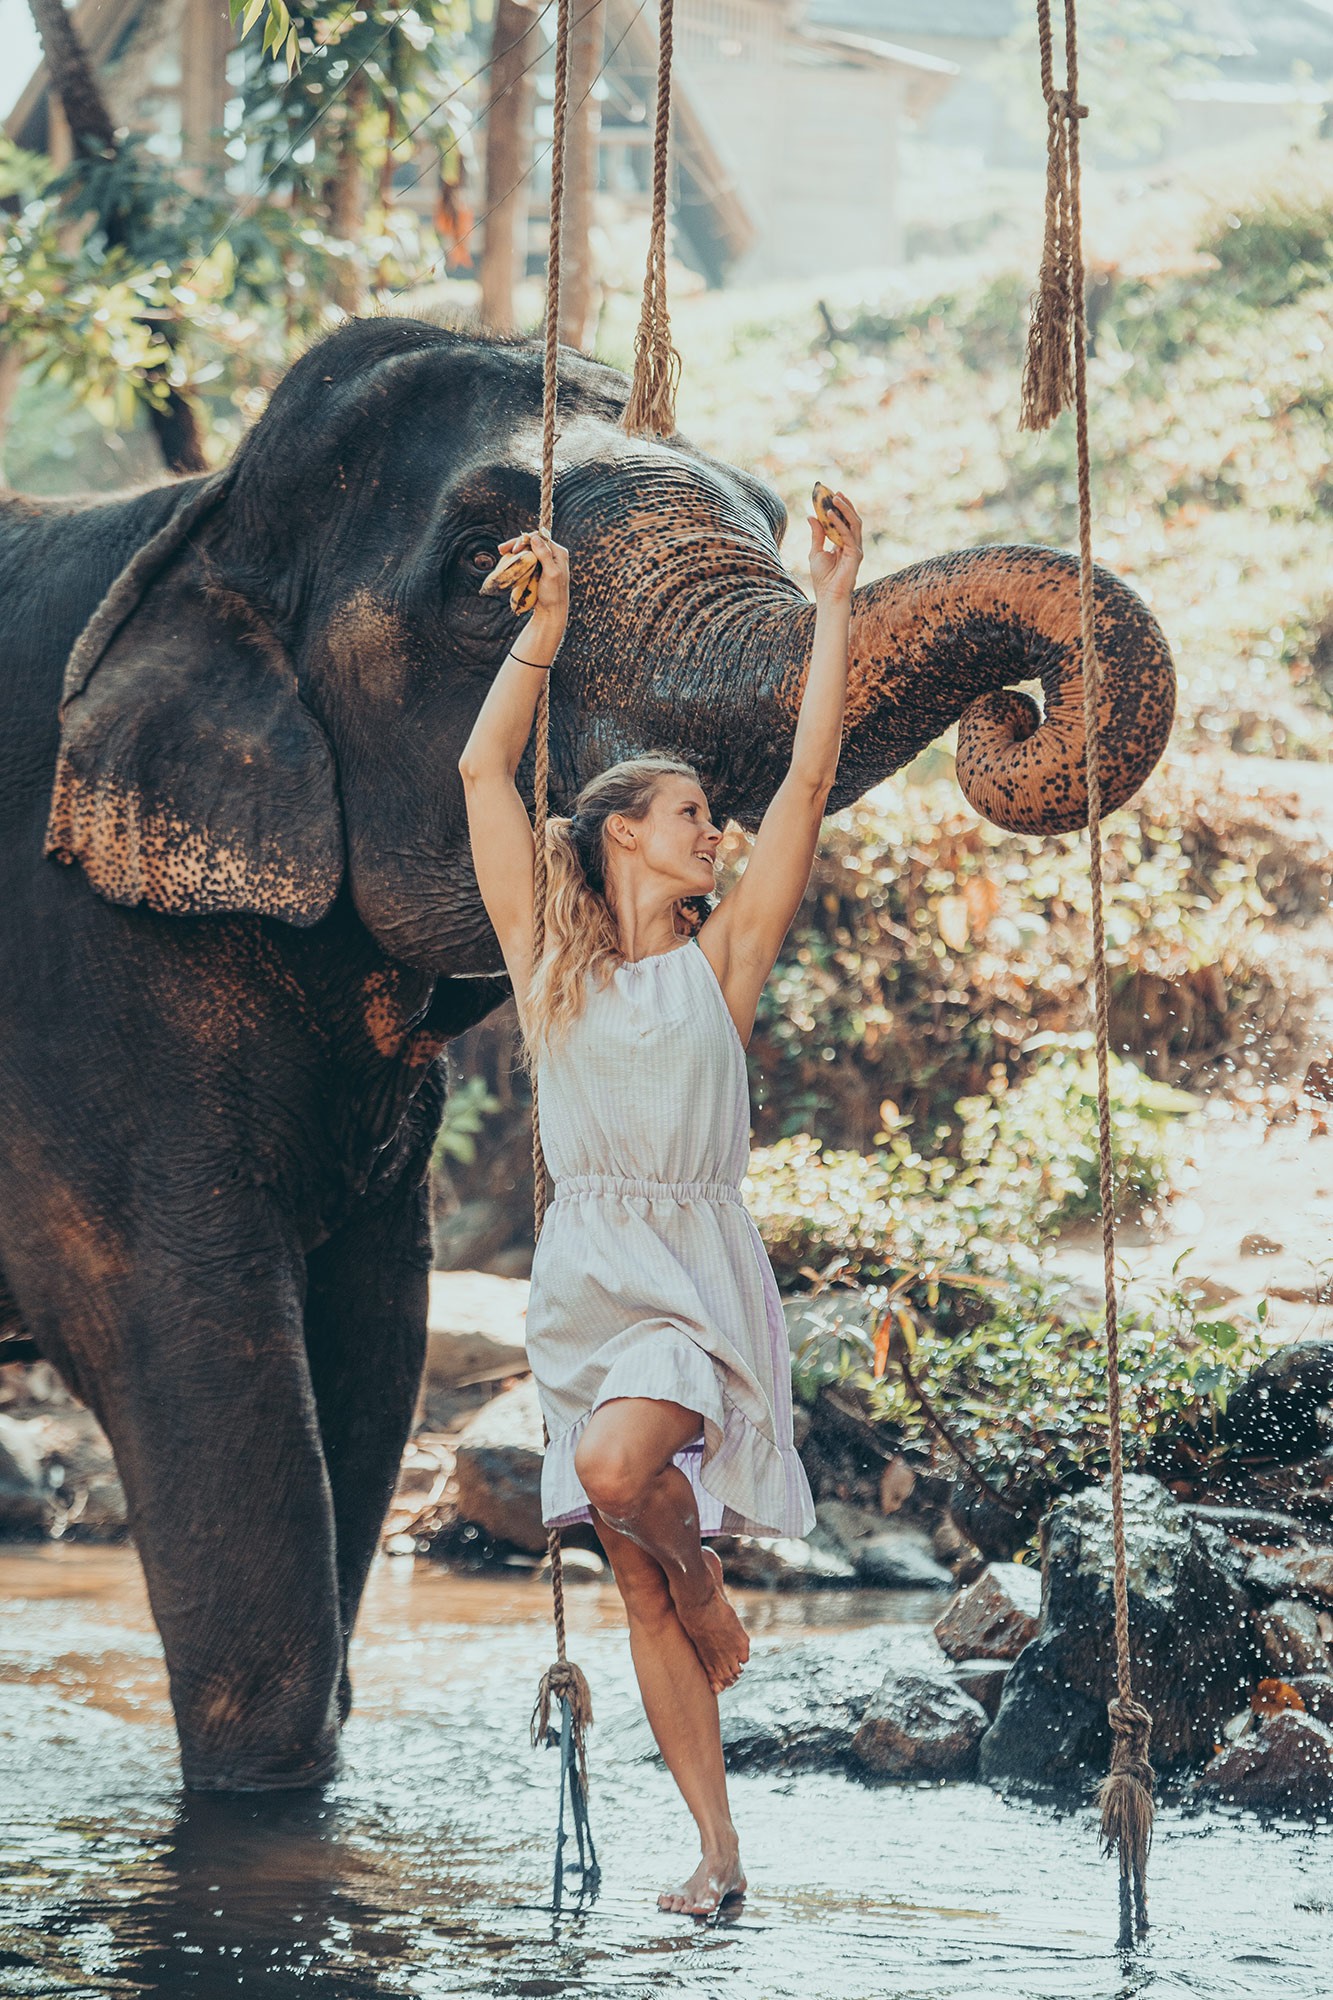 Golden Elephant – 90 minute photo shoot with James de la Cloche at Chai Lai Orchid, Chiang Mai